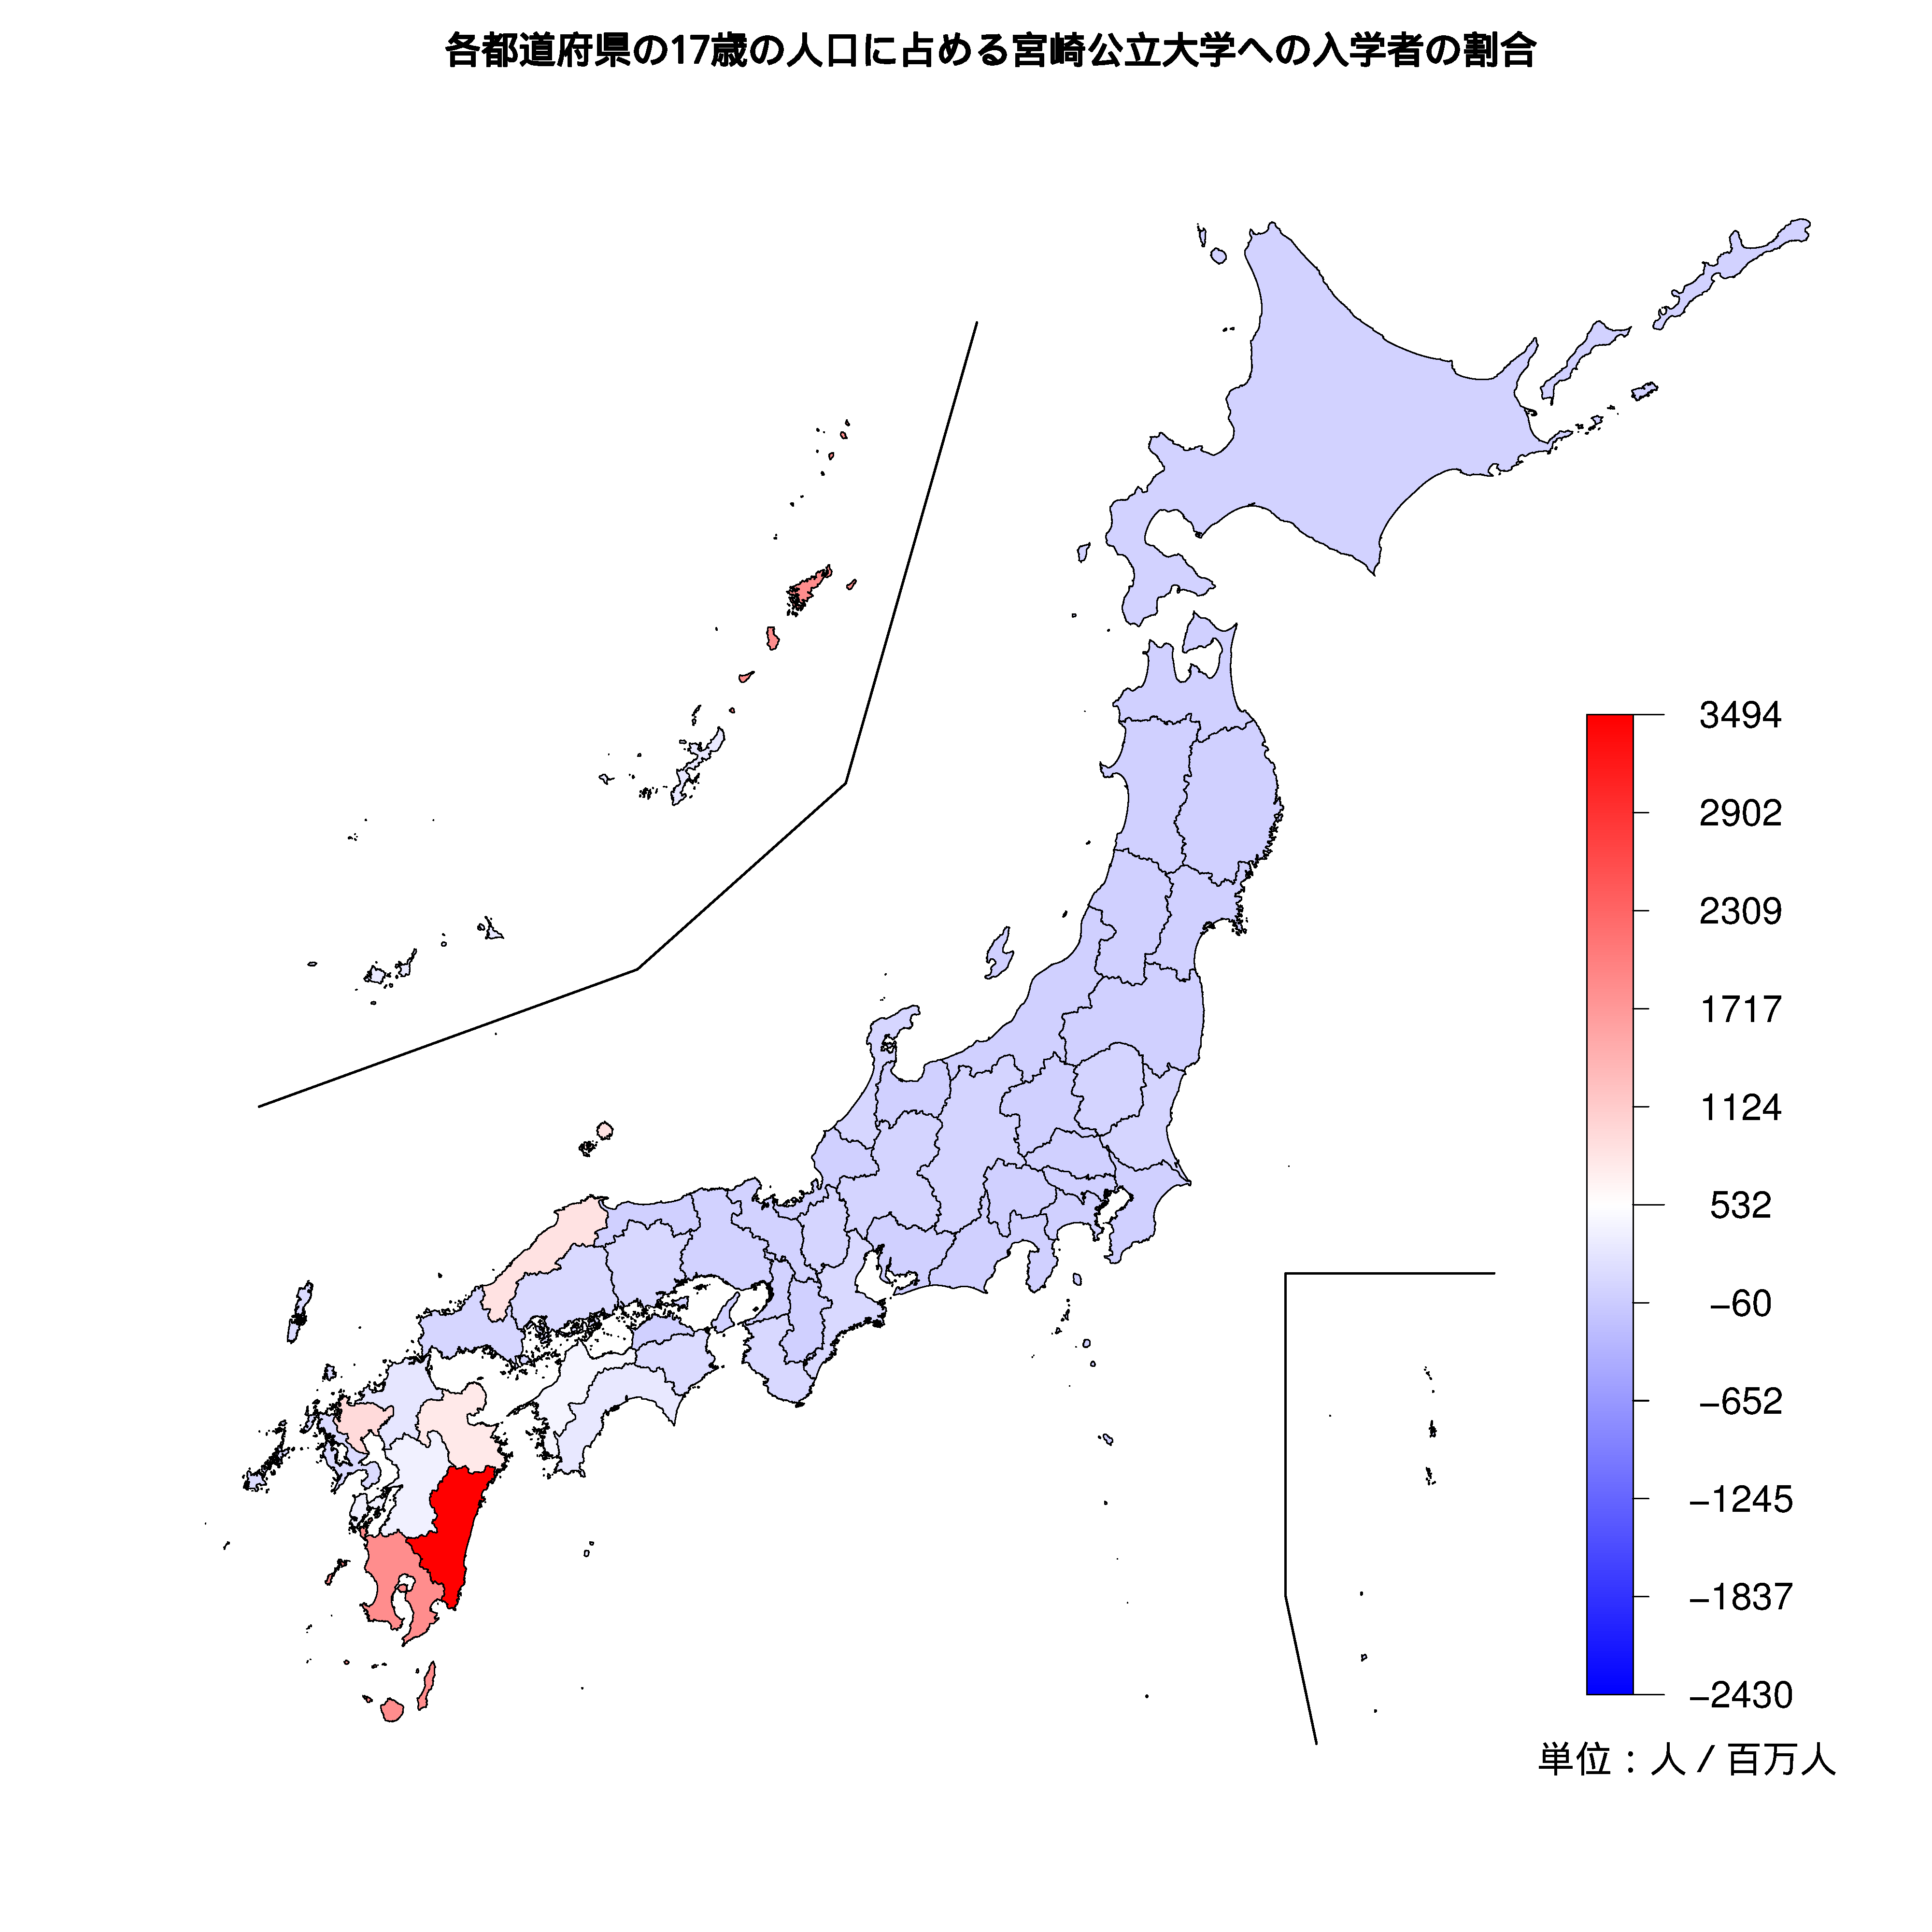 宮崎公立大学への入学者が多い都道府県の色分け地図